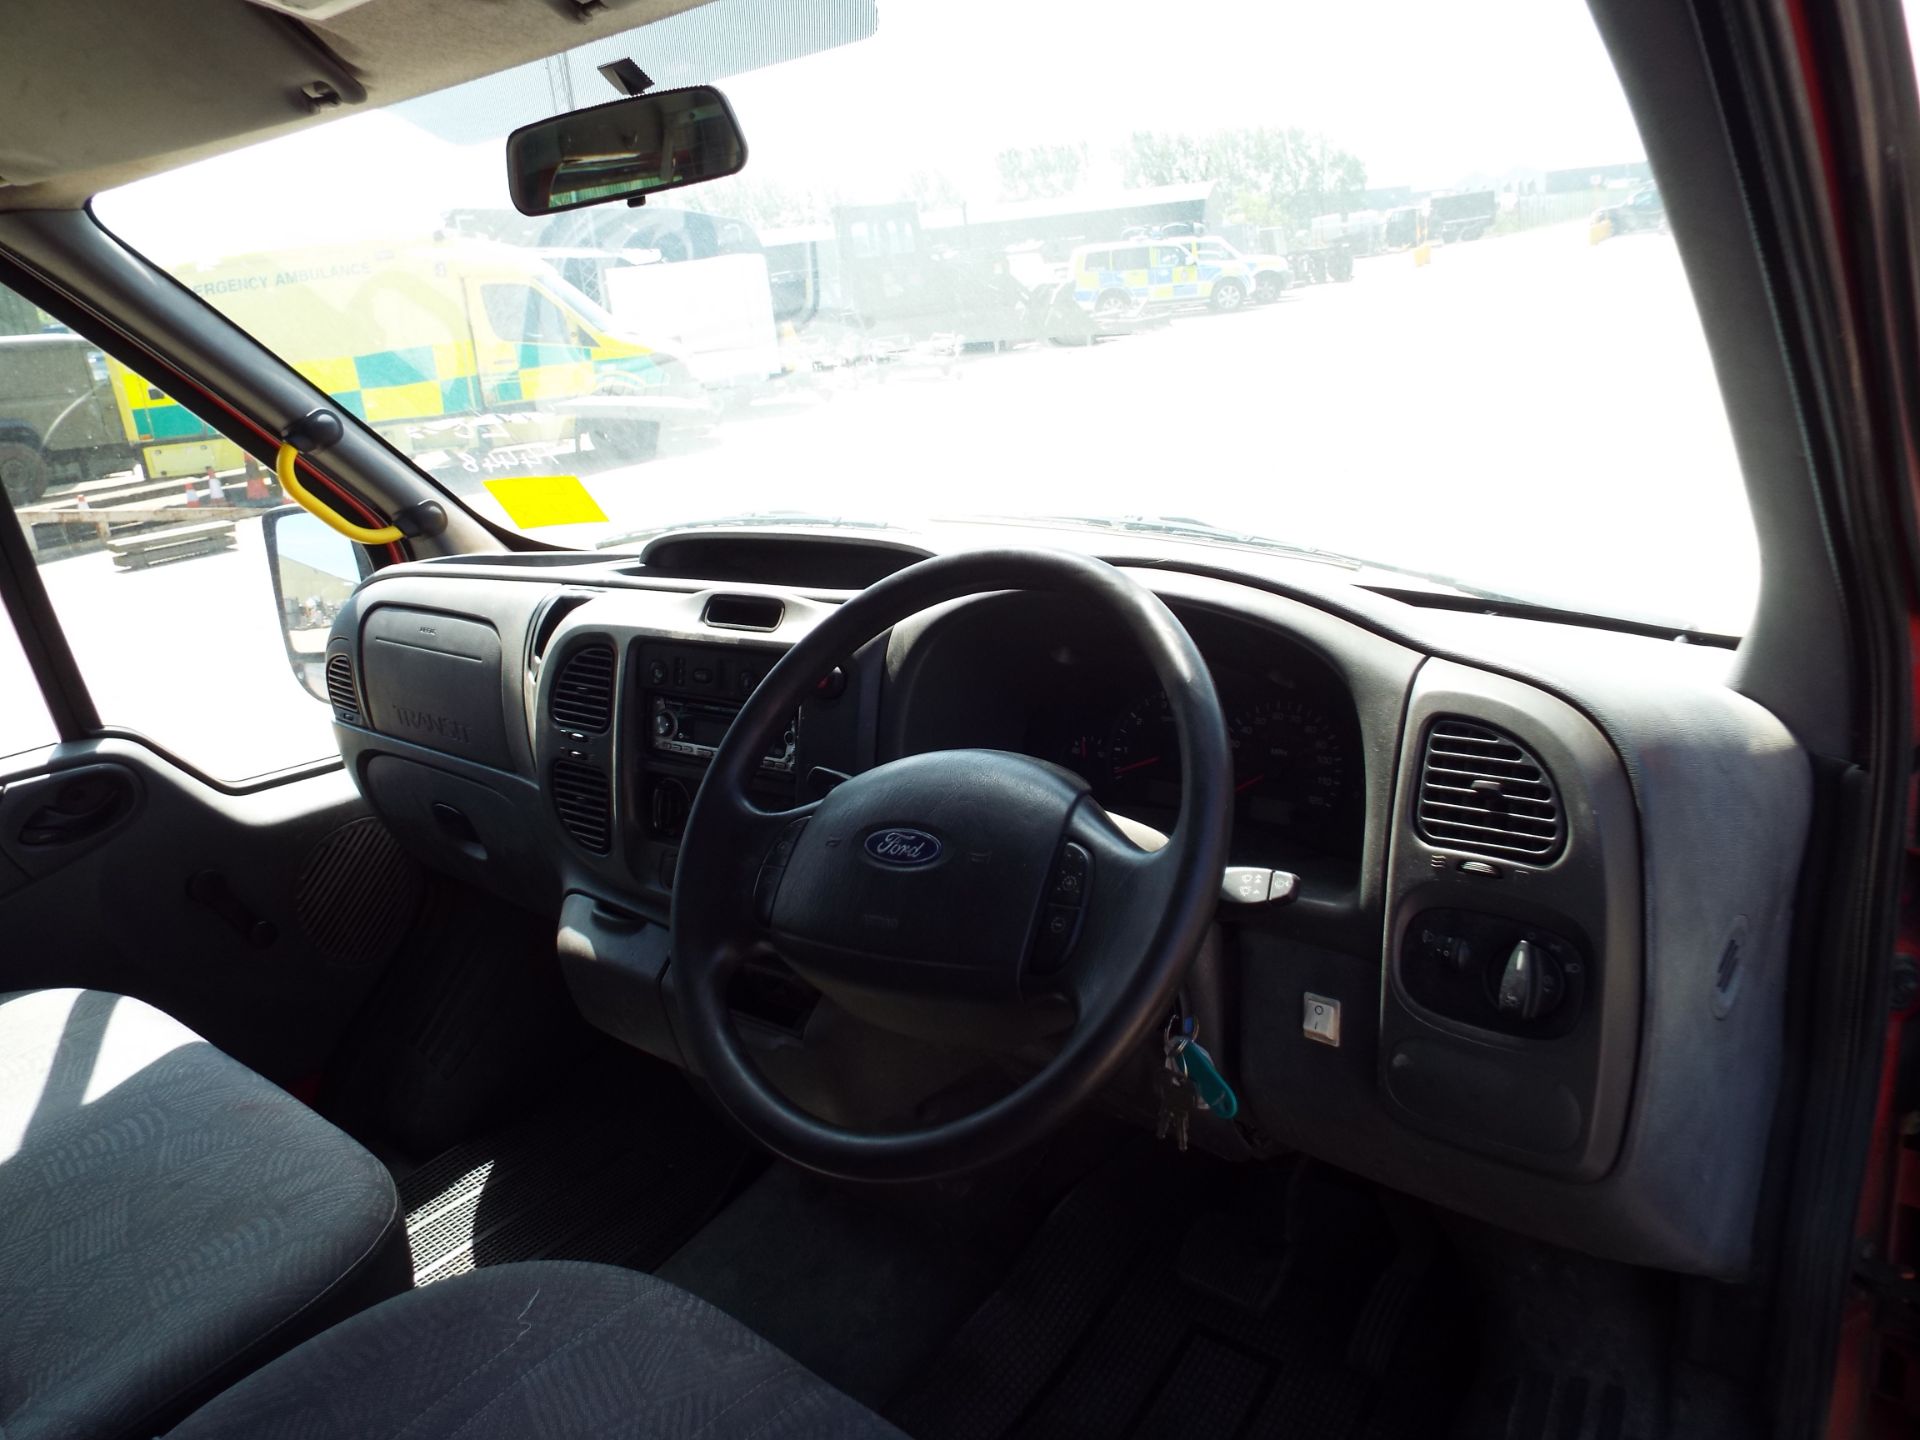 Ford Transit 9 Seat Minibus - Image 11 of 18